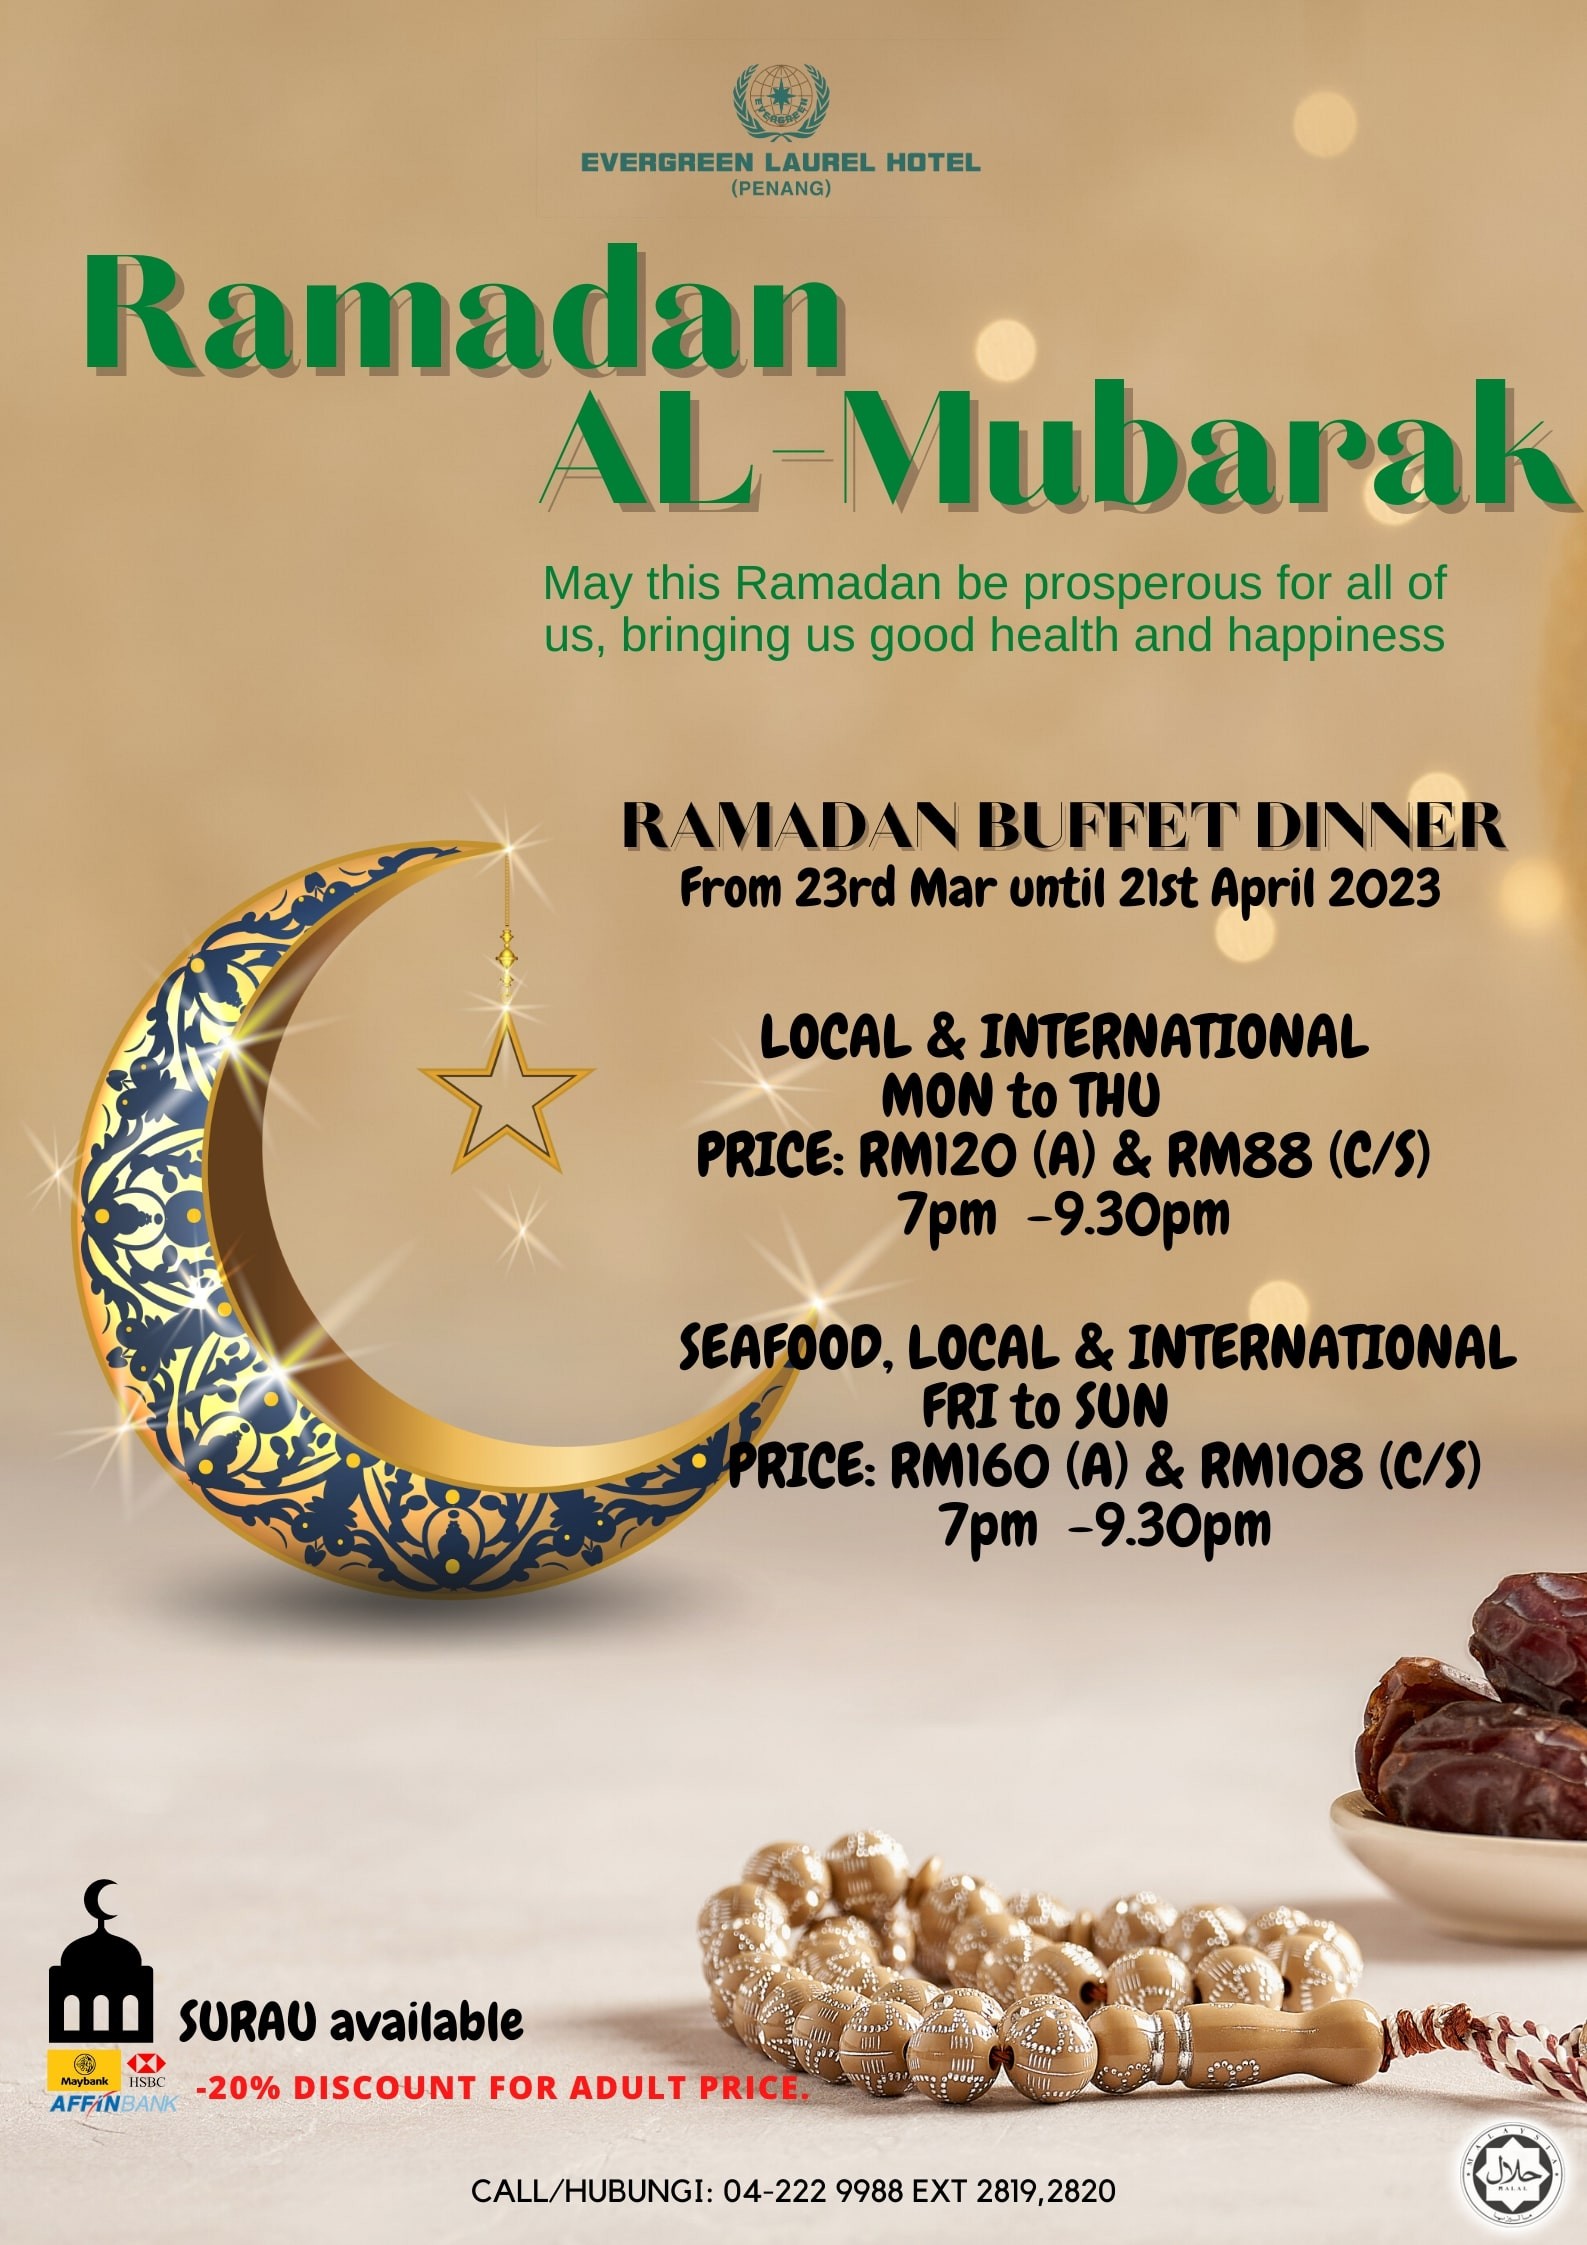 Ramadan Al-Mubarak by Evergreen Laurel Hotel